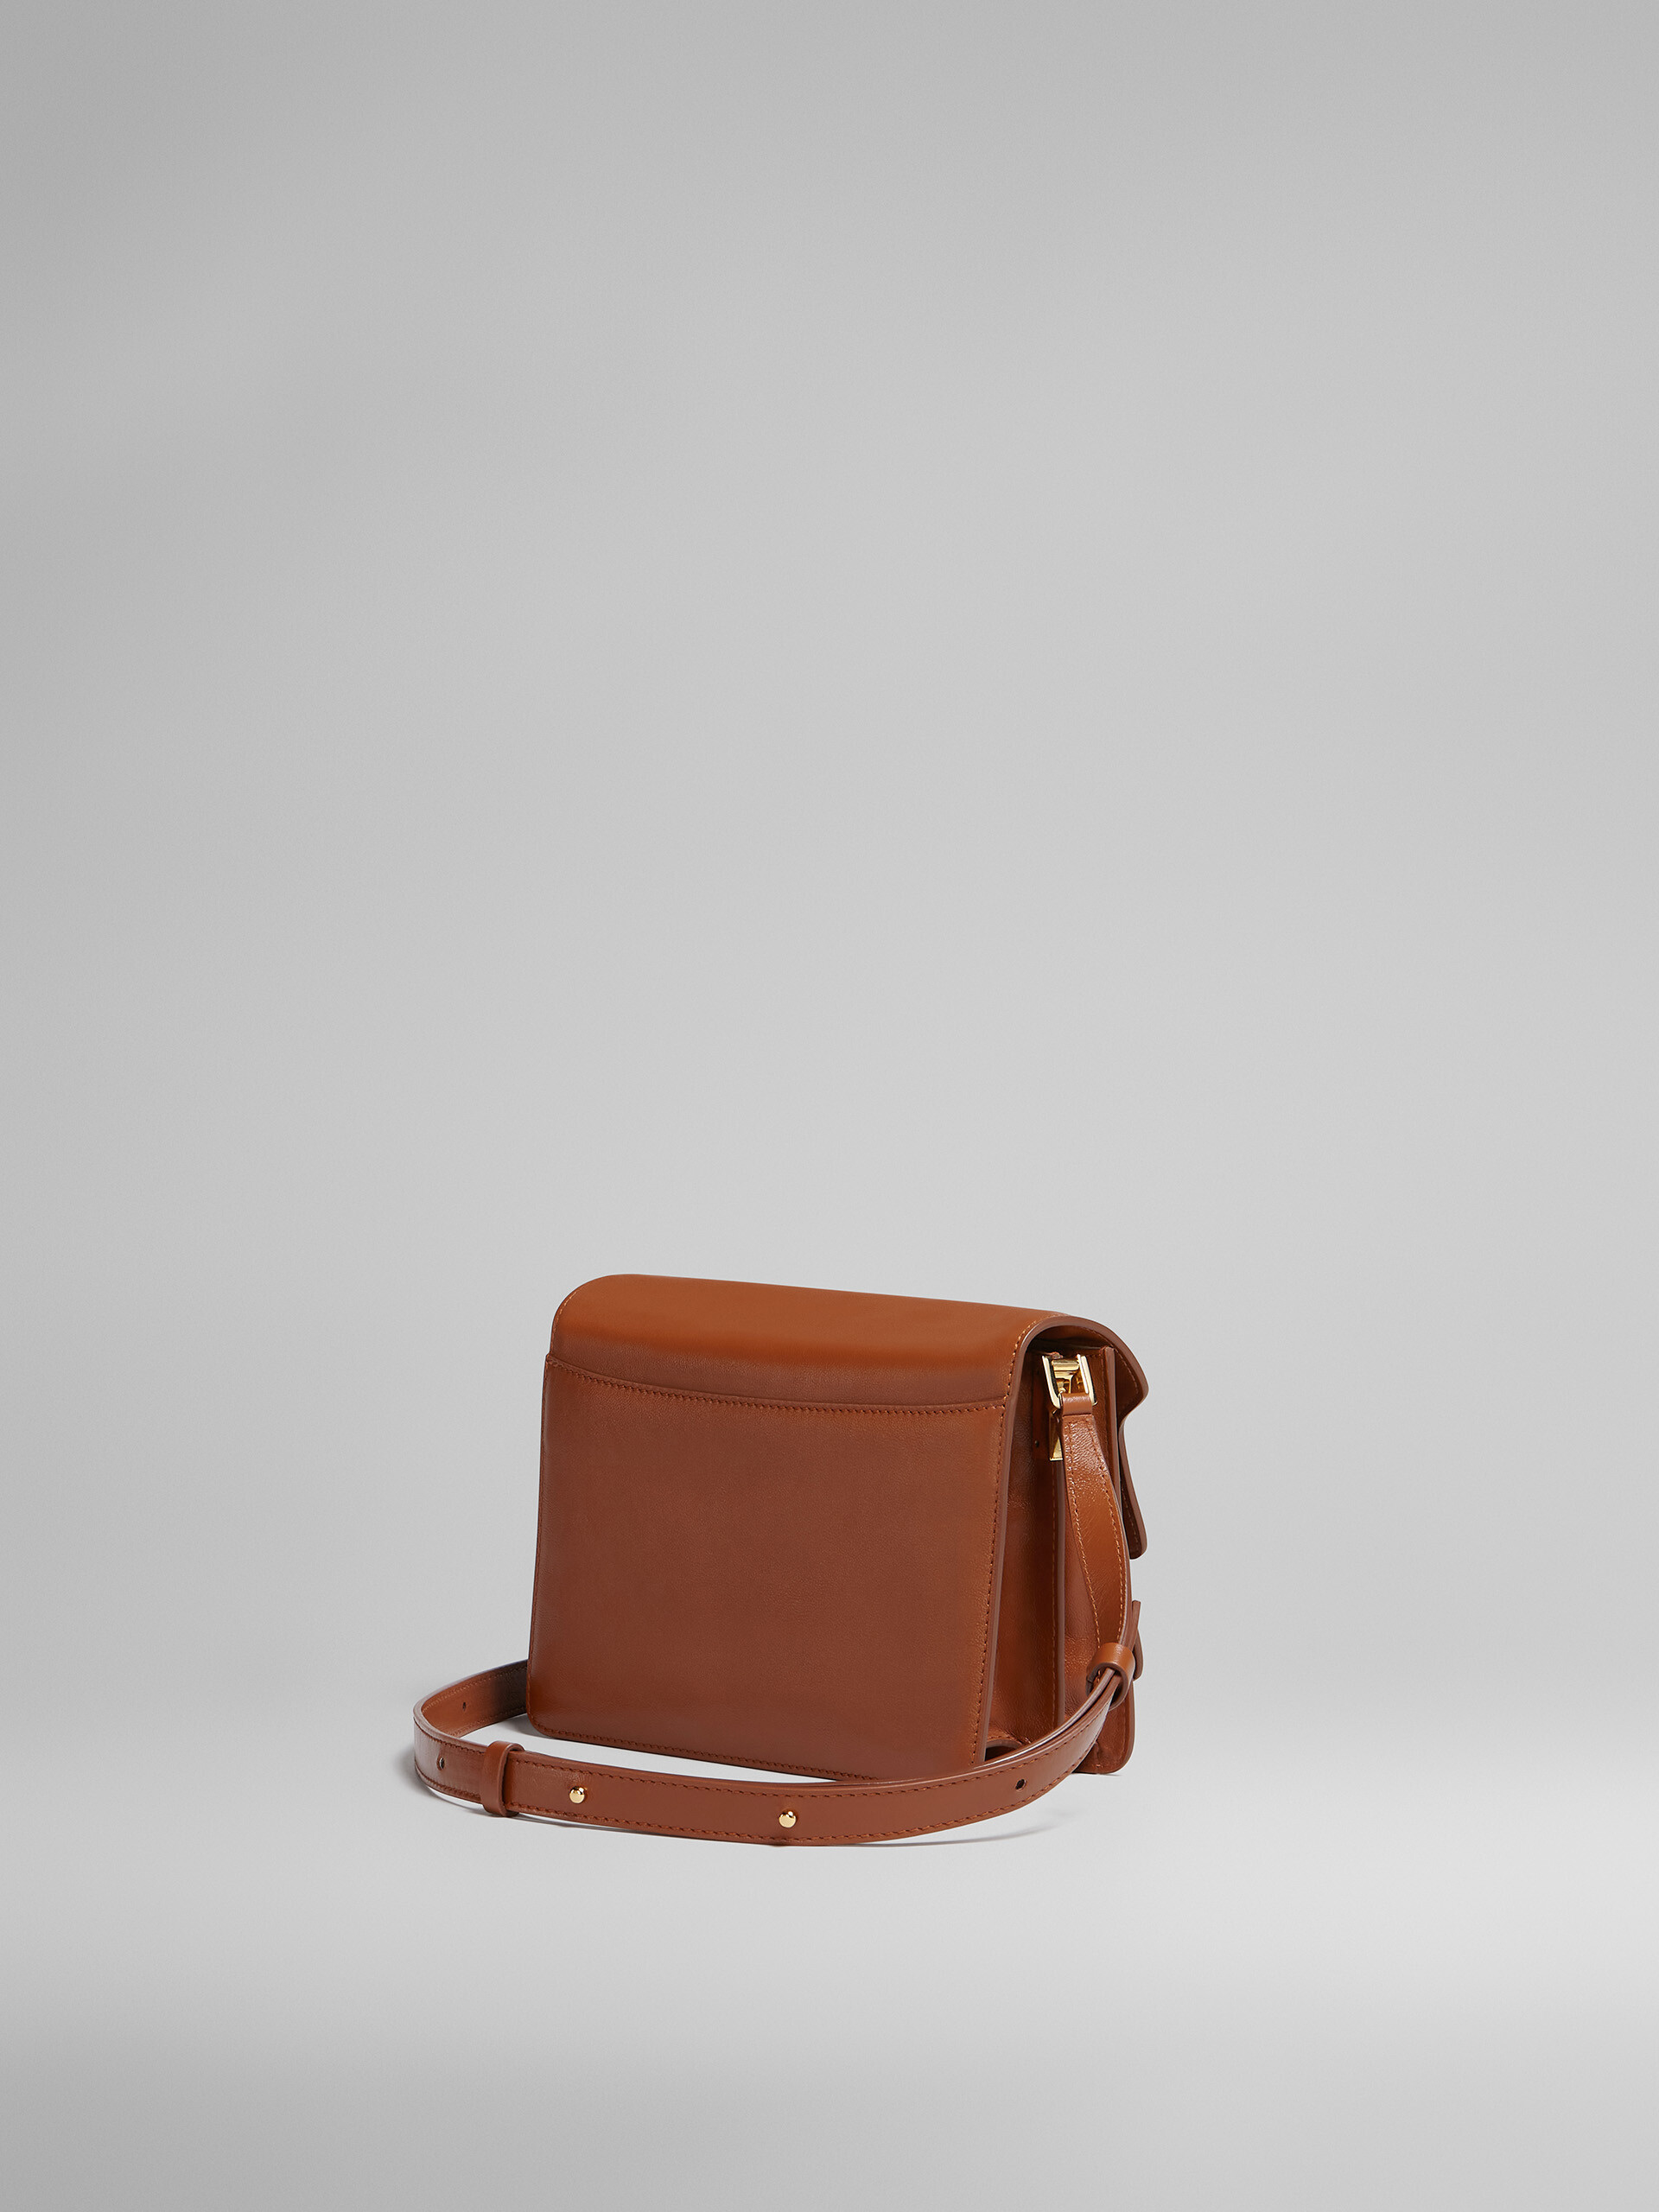 TRUNK SOFT medium bag in brown leather - Shoulder Bag - Image 3